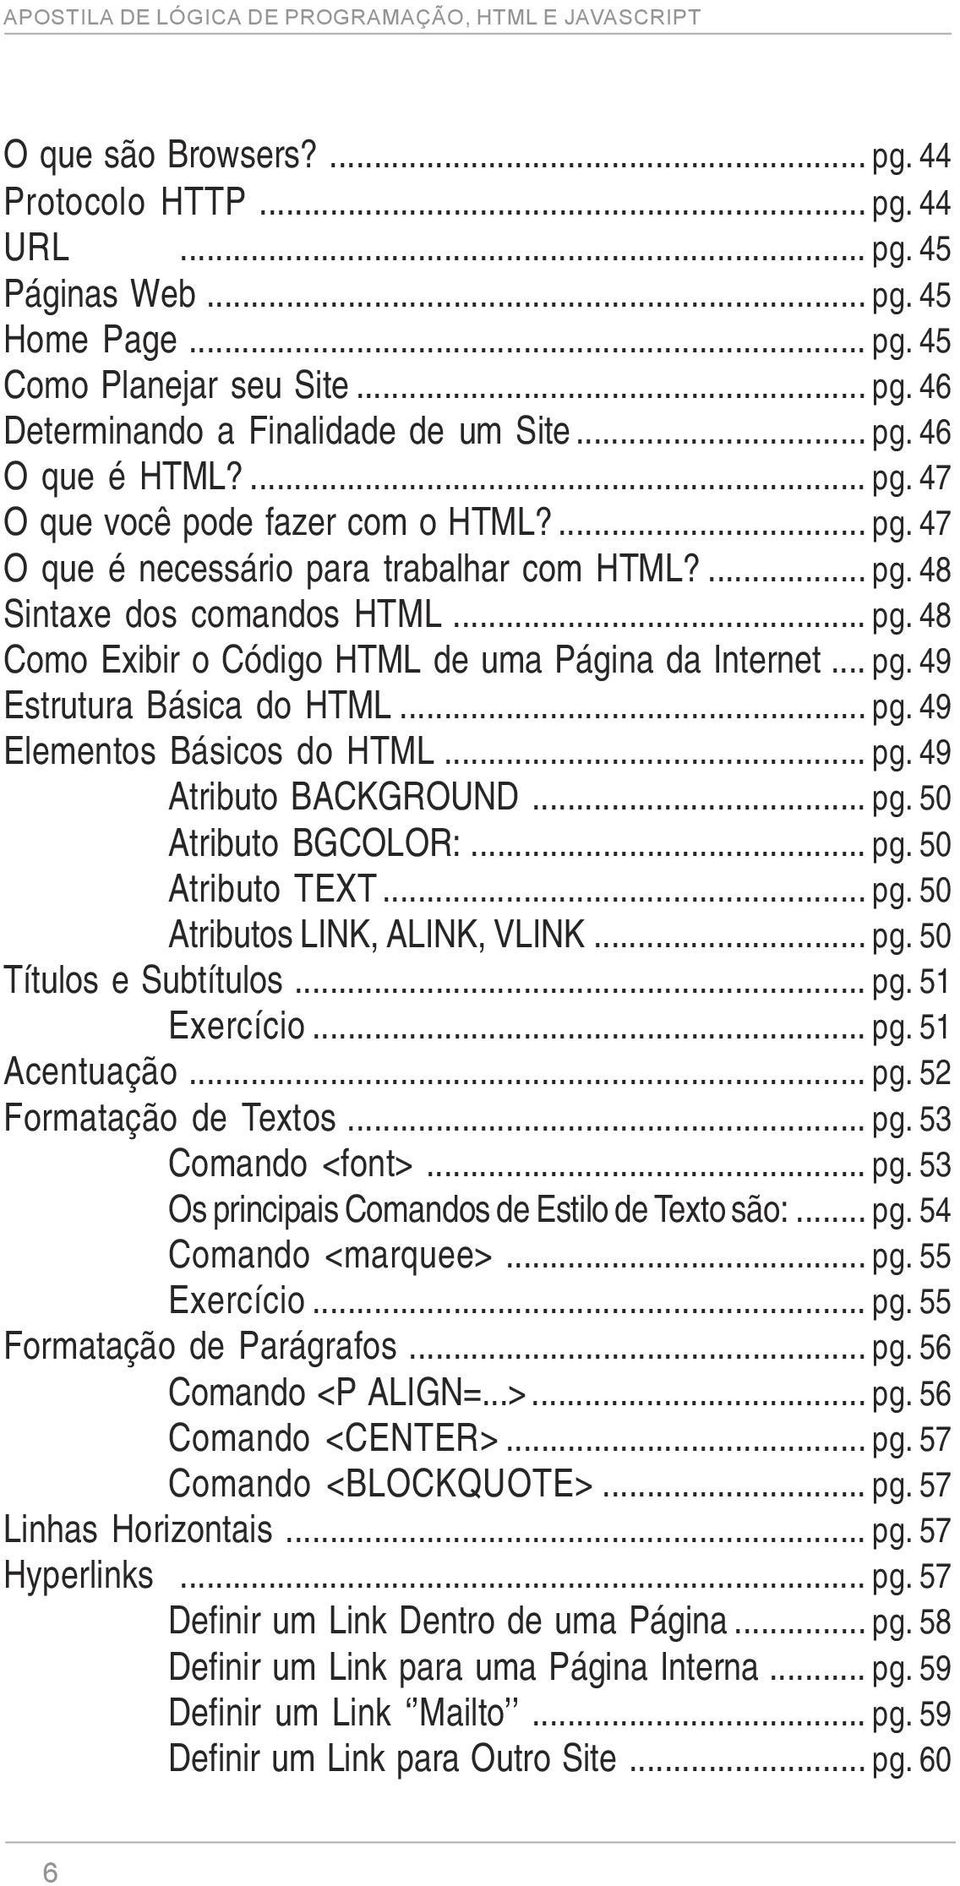 .. pg. 49 Estrutura Básica do HTML... pg. 49 Elementos Básicos do HTML... pg. 49 Atributo BACKGROUND... pg. 50 Atributo BGCOLOR:... pg. 50 Atributo TEXT... pg. 50 Atributos LINK, ALINK, VLINK... pg. 50 Títulos e Subtítulos.